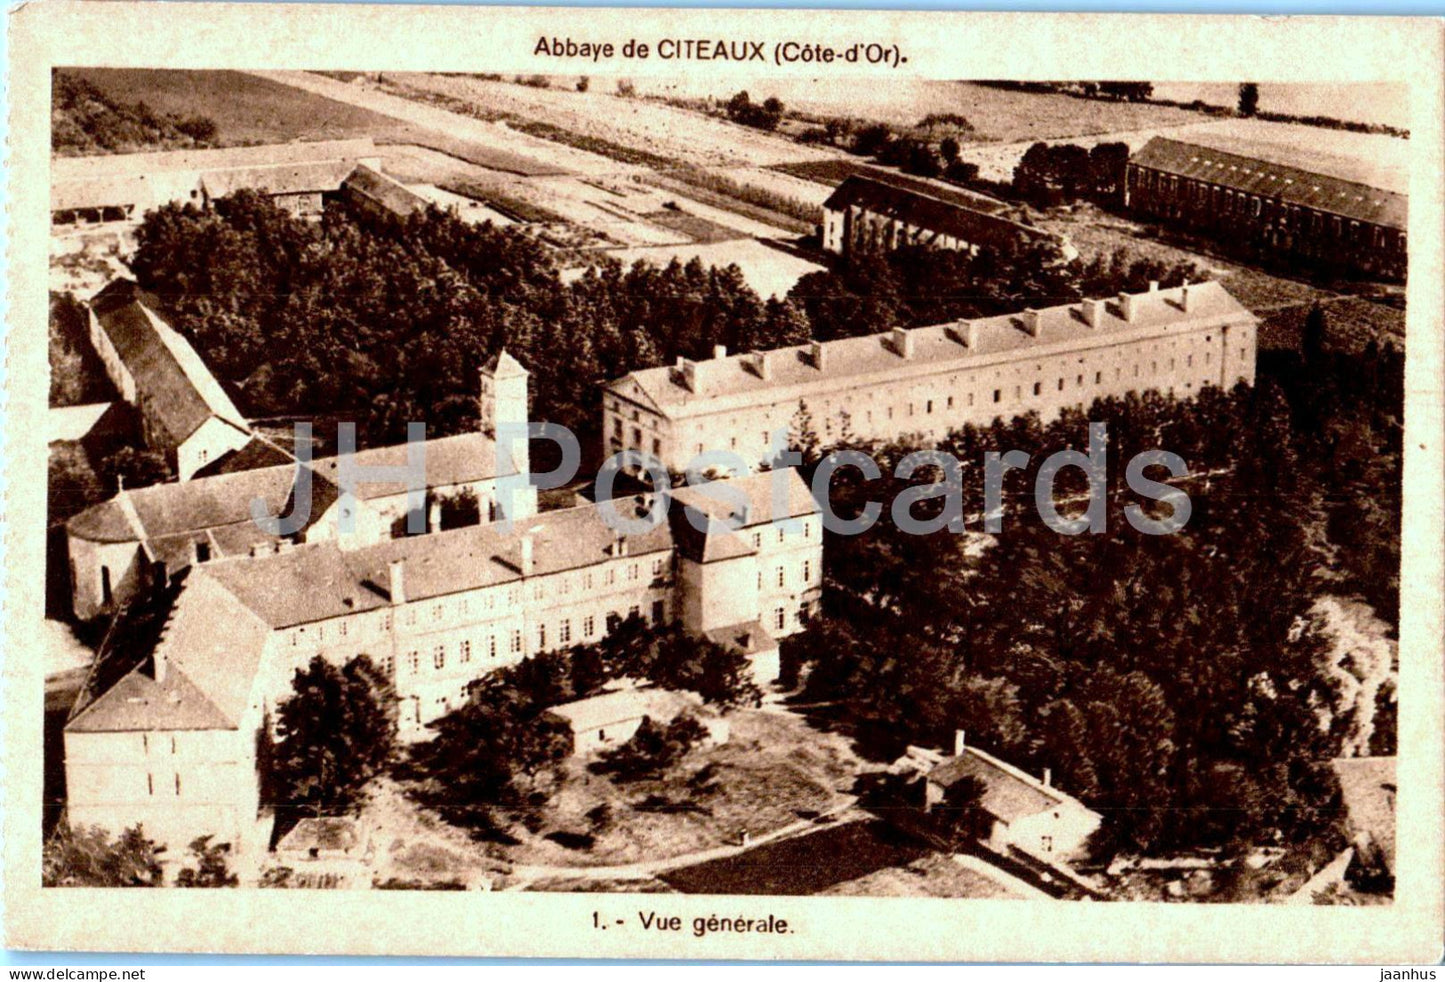 Abbaye de Citeaux - Vue Generale - 1 - old postcard - France - unused - JH Postcards